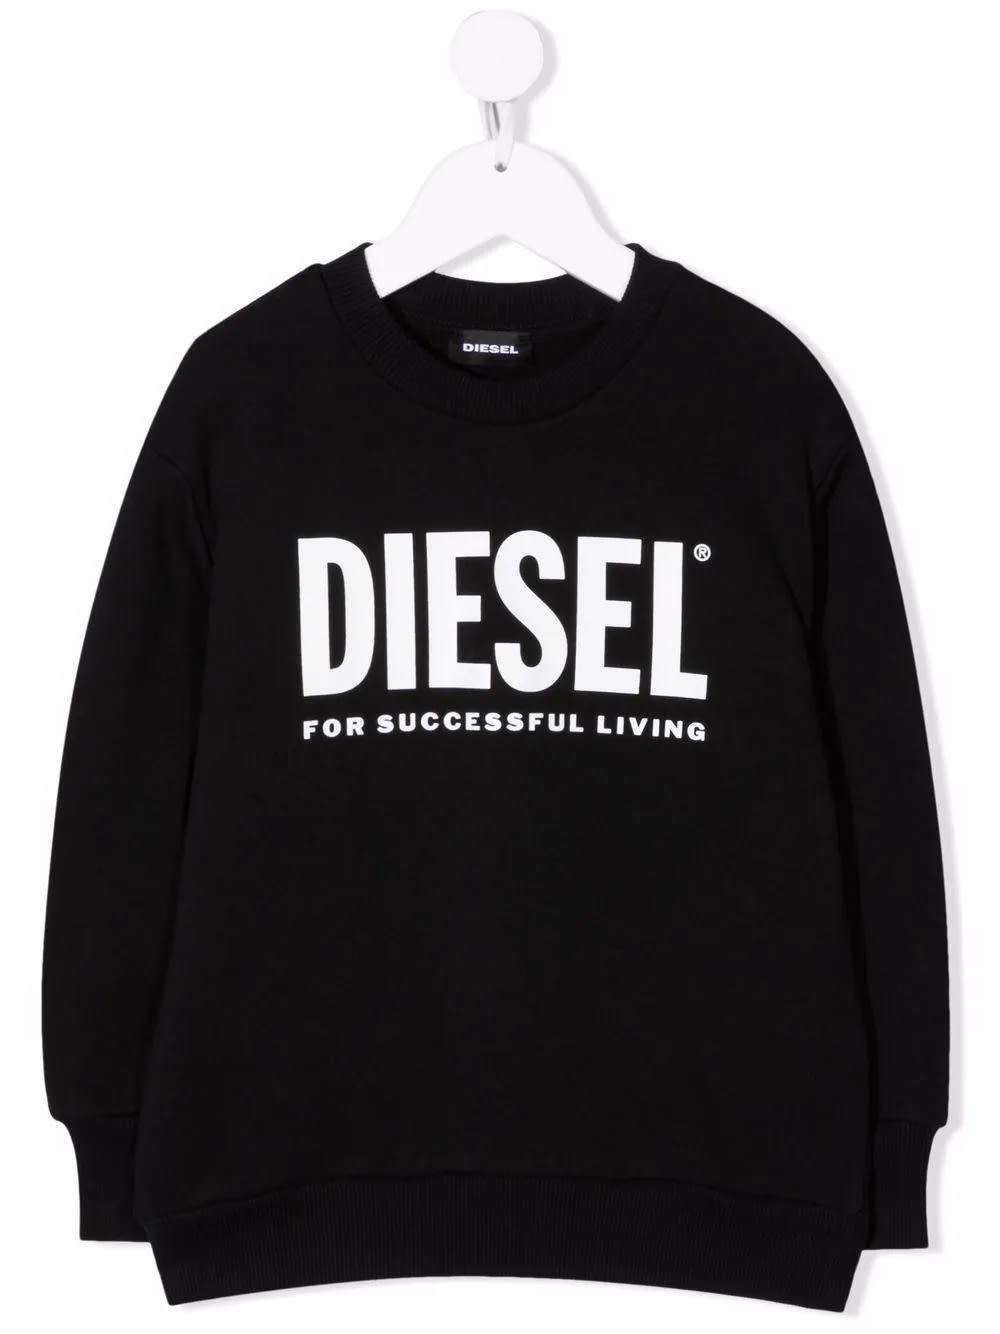 Diesel Kids Black Sweatshirt With White Oversize Logo